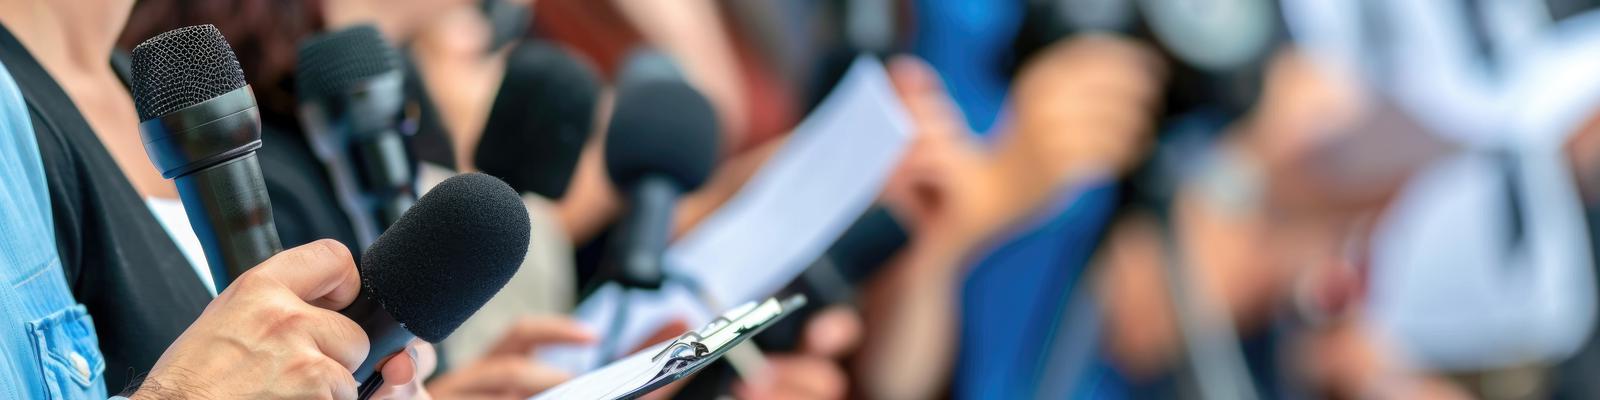 Journalister samlade under en presskonferens med anteckningsblock och mikrofoner,